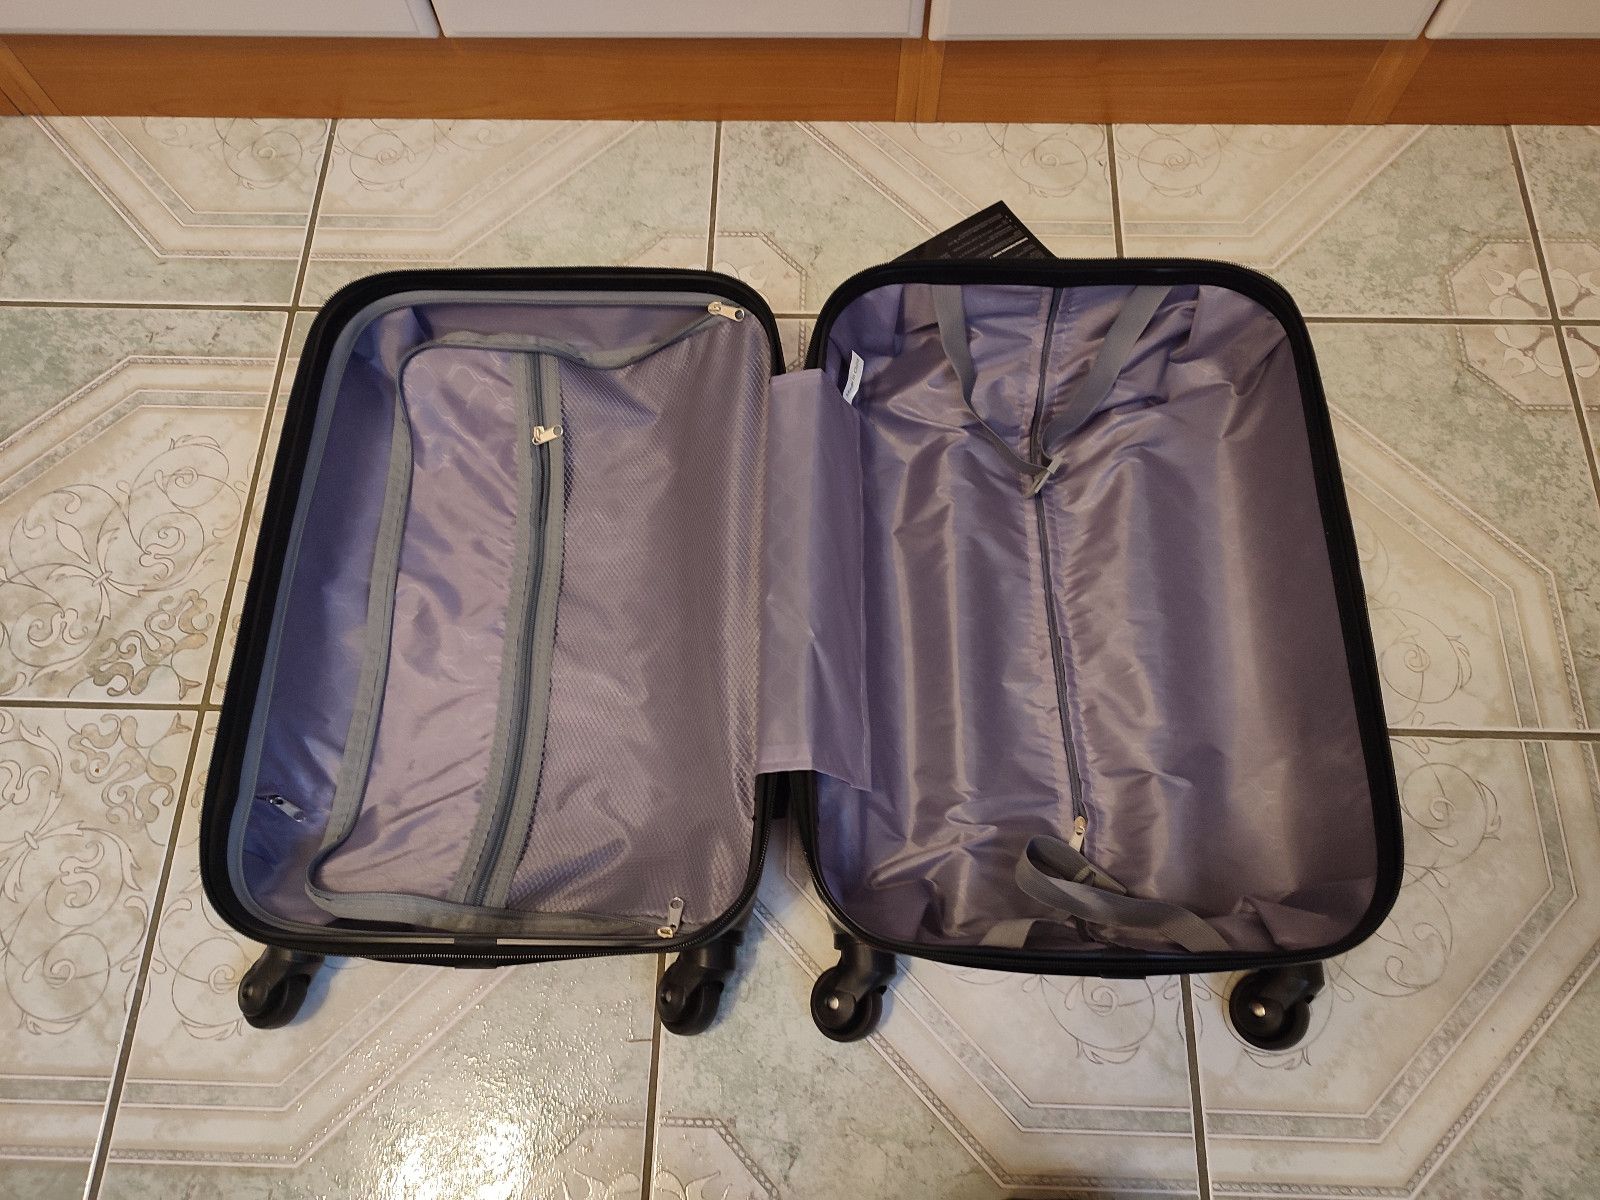 Nowa czerwona walizka podróżna